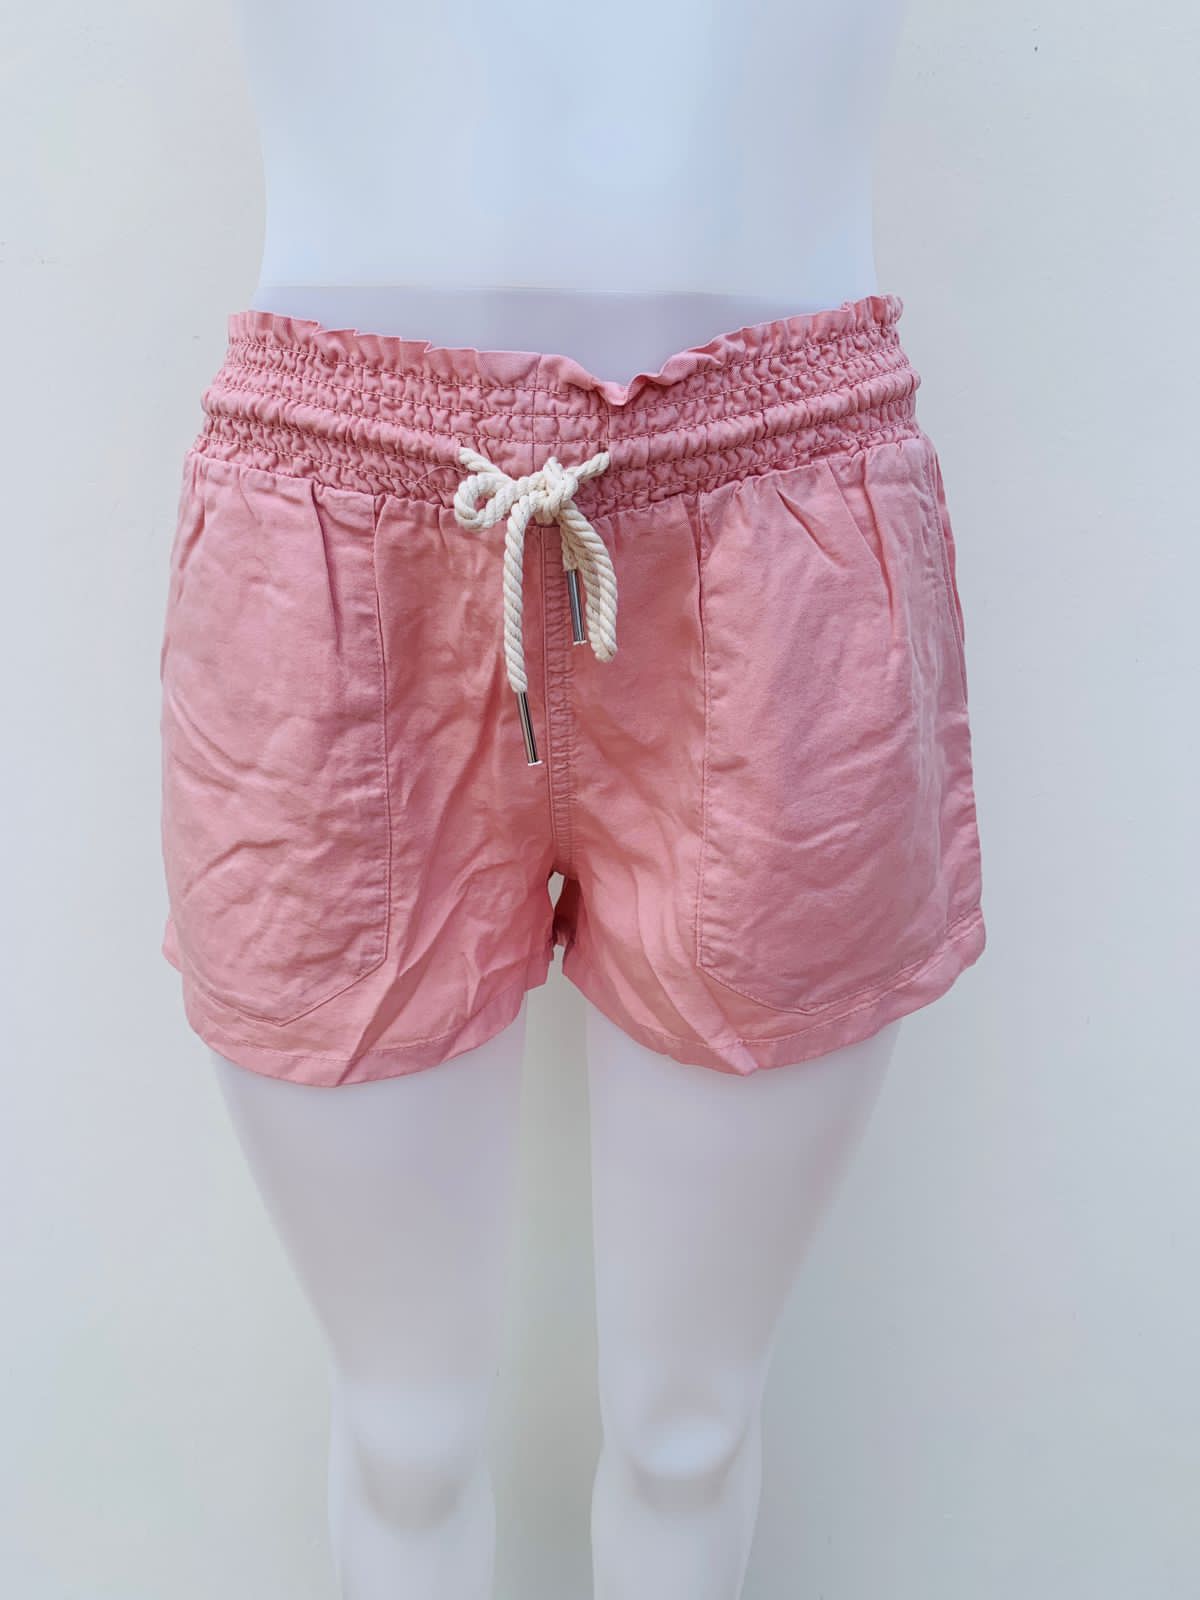 Short FASHION NOVA original, rosado opaco claro con cintura dobladilla y lazo ajustable en el centro estilo cordón de color crema.